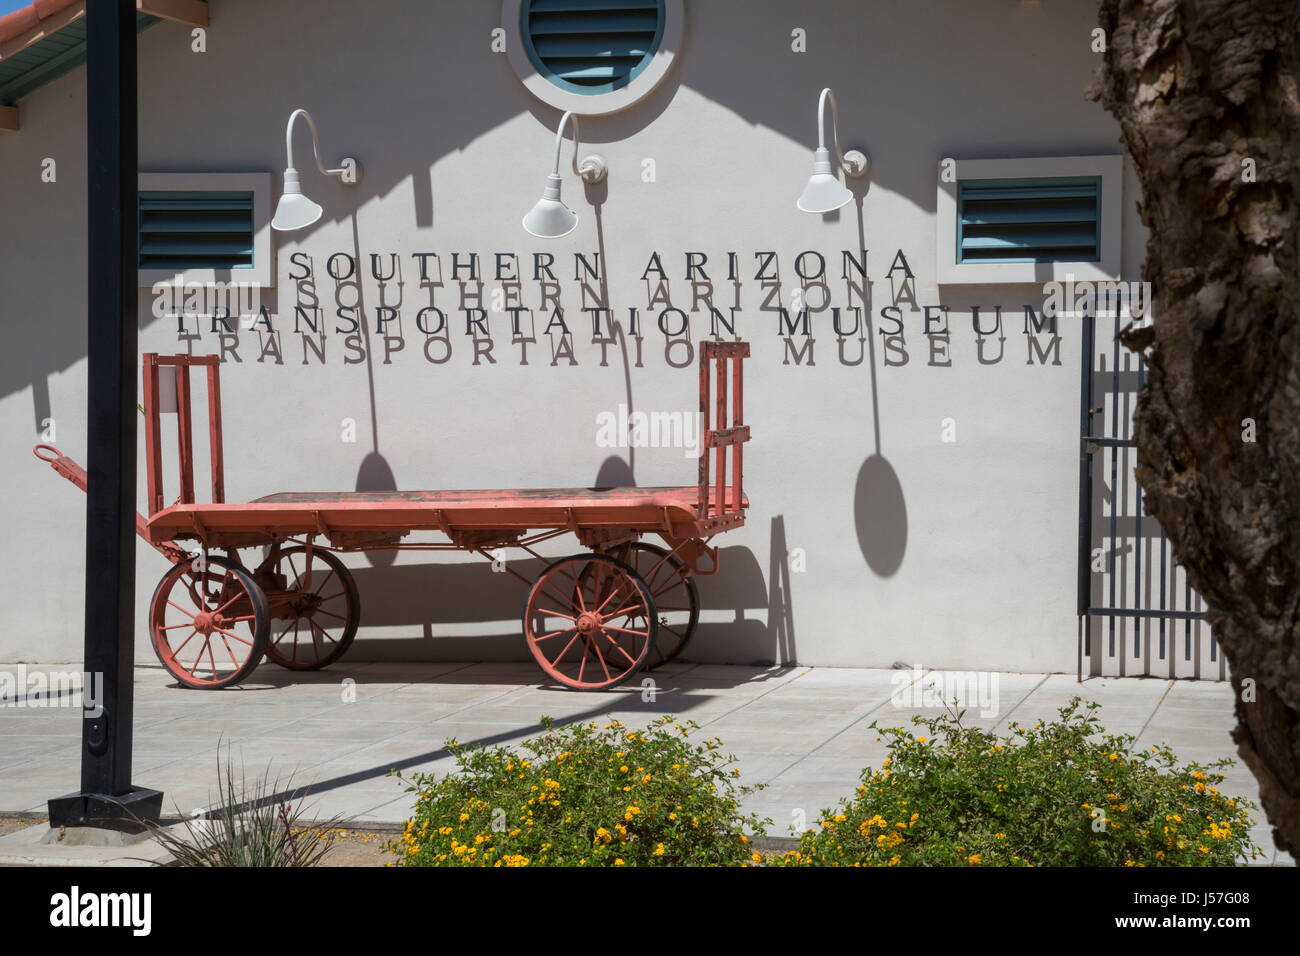 Tucson, Arizona - The Southern Arizona Transportation Museum, gelegen im alten südlichen Pazifik Depot. Stockfoto